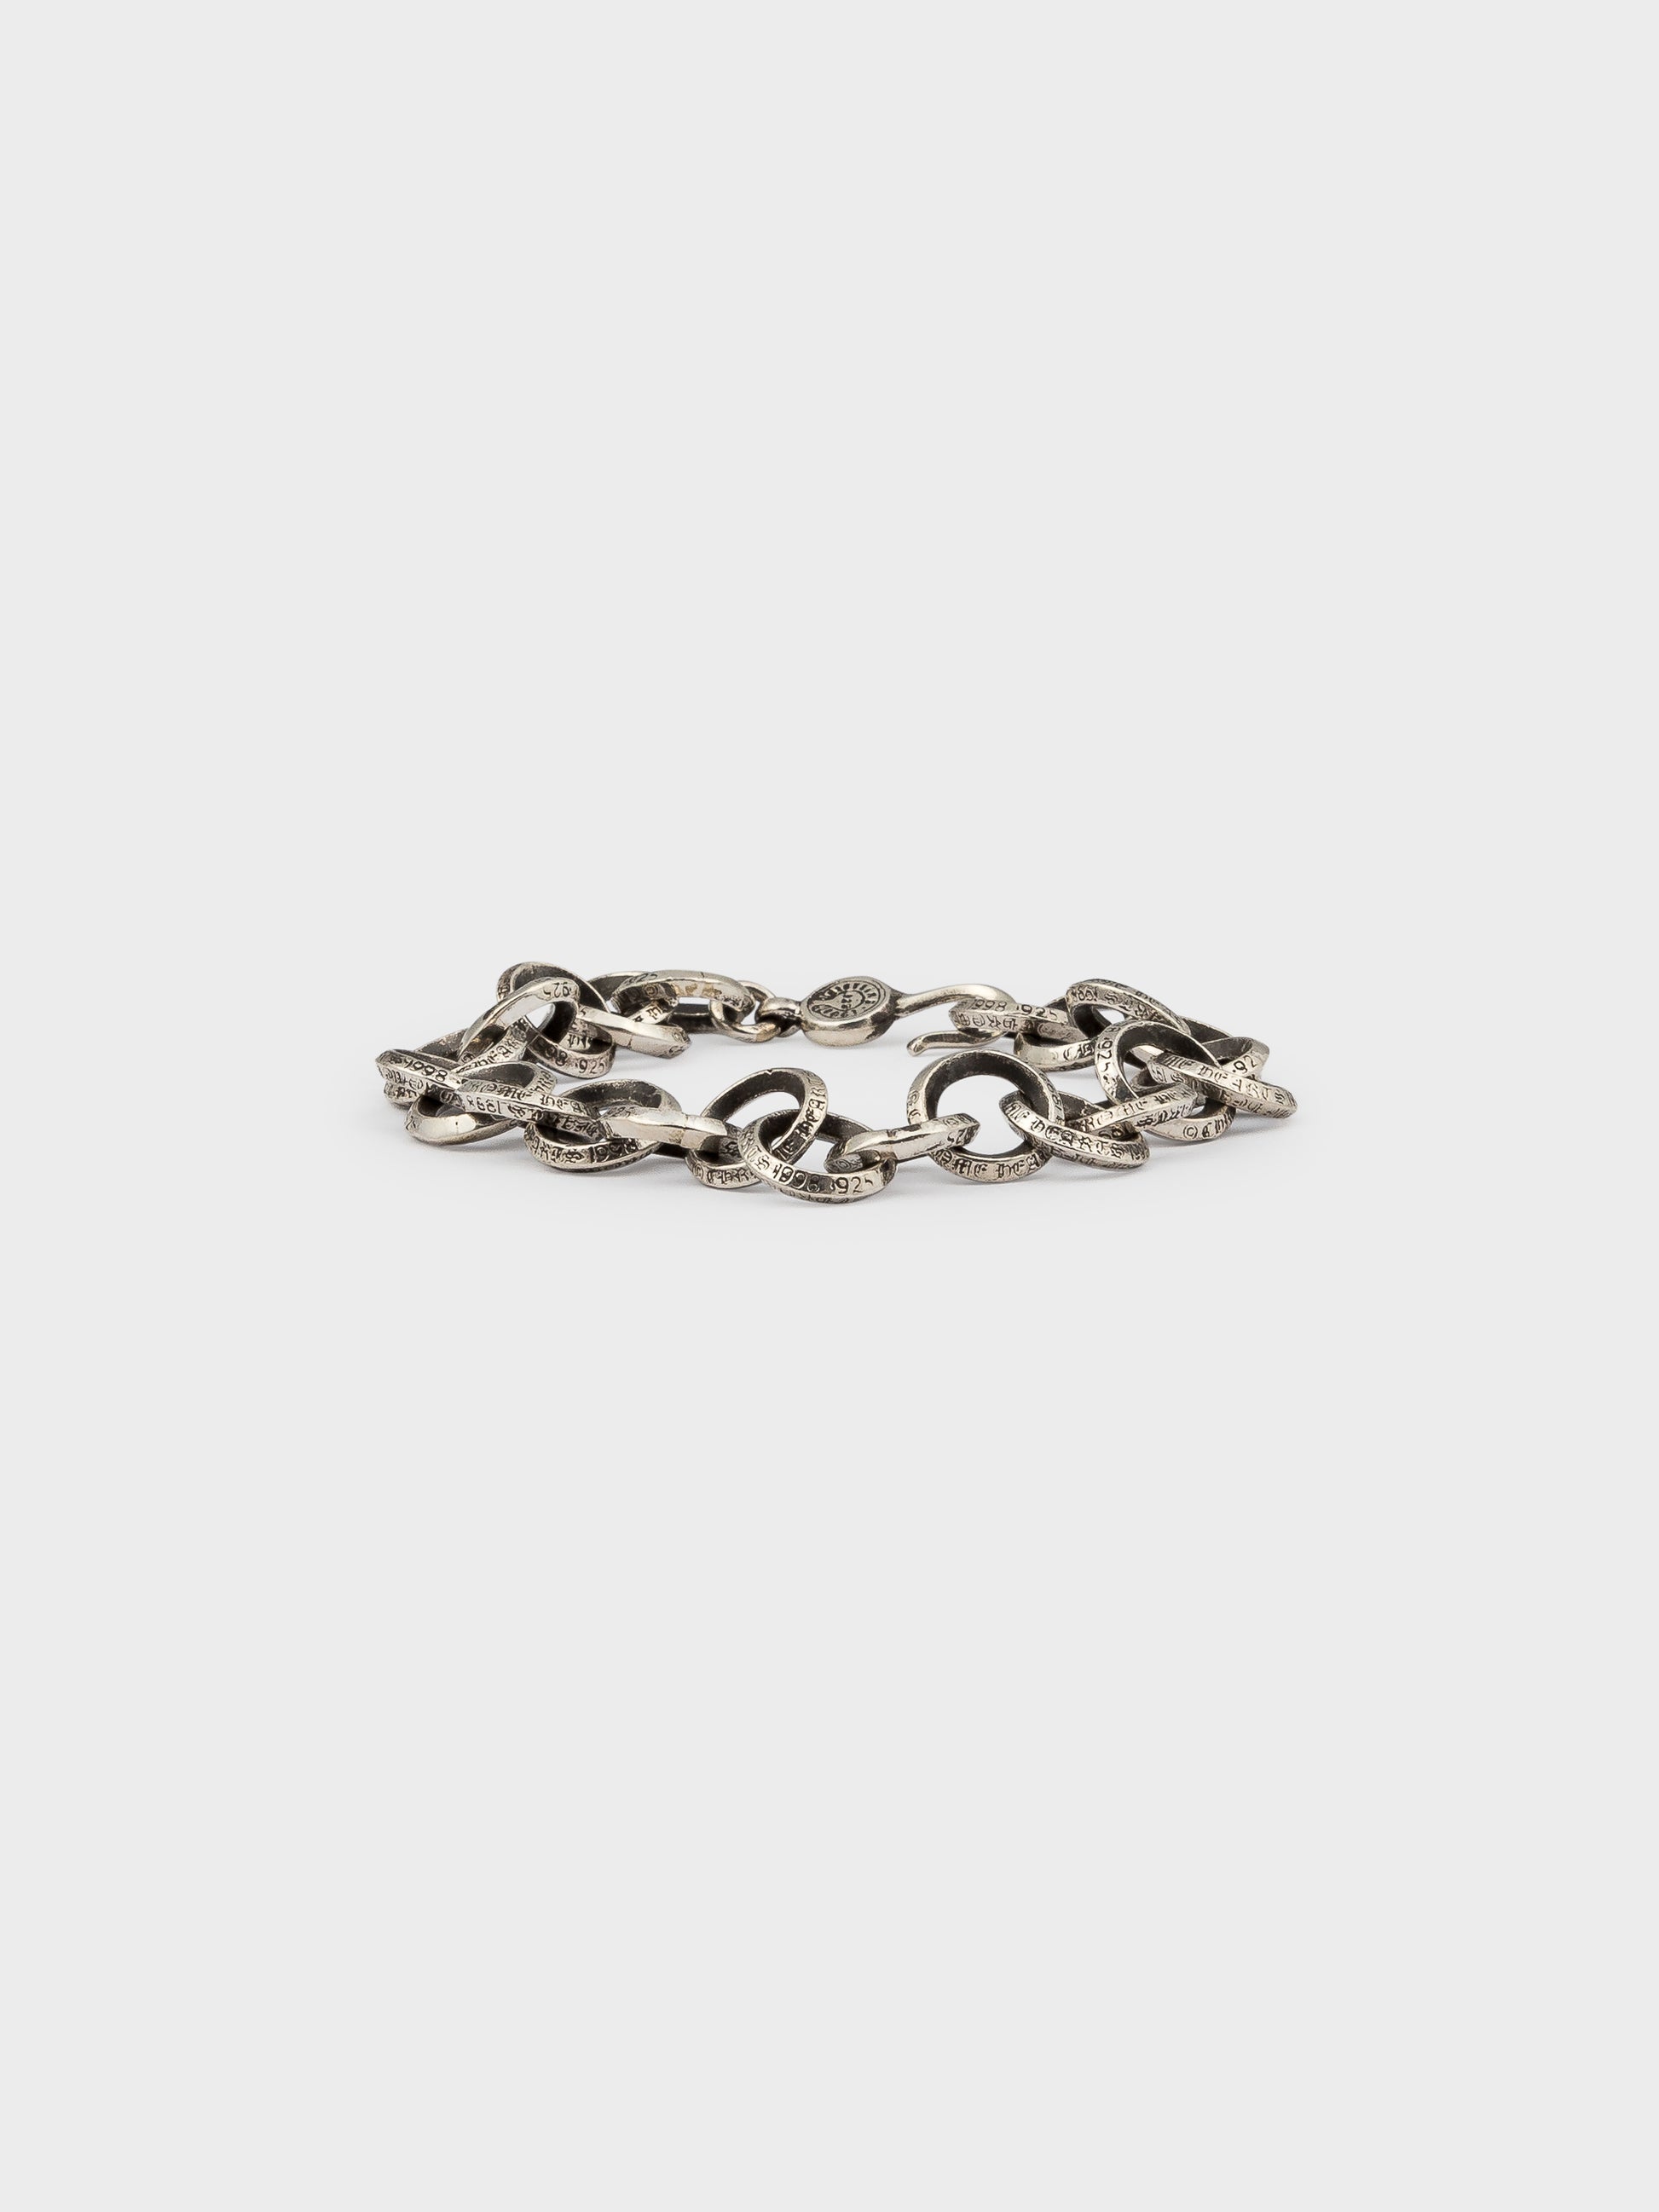 Modern designer golden drops handmade chain bracelet at ₹1550 | Azilaa